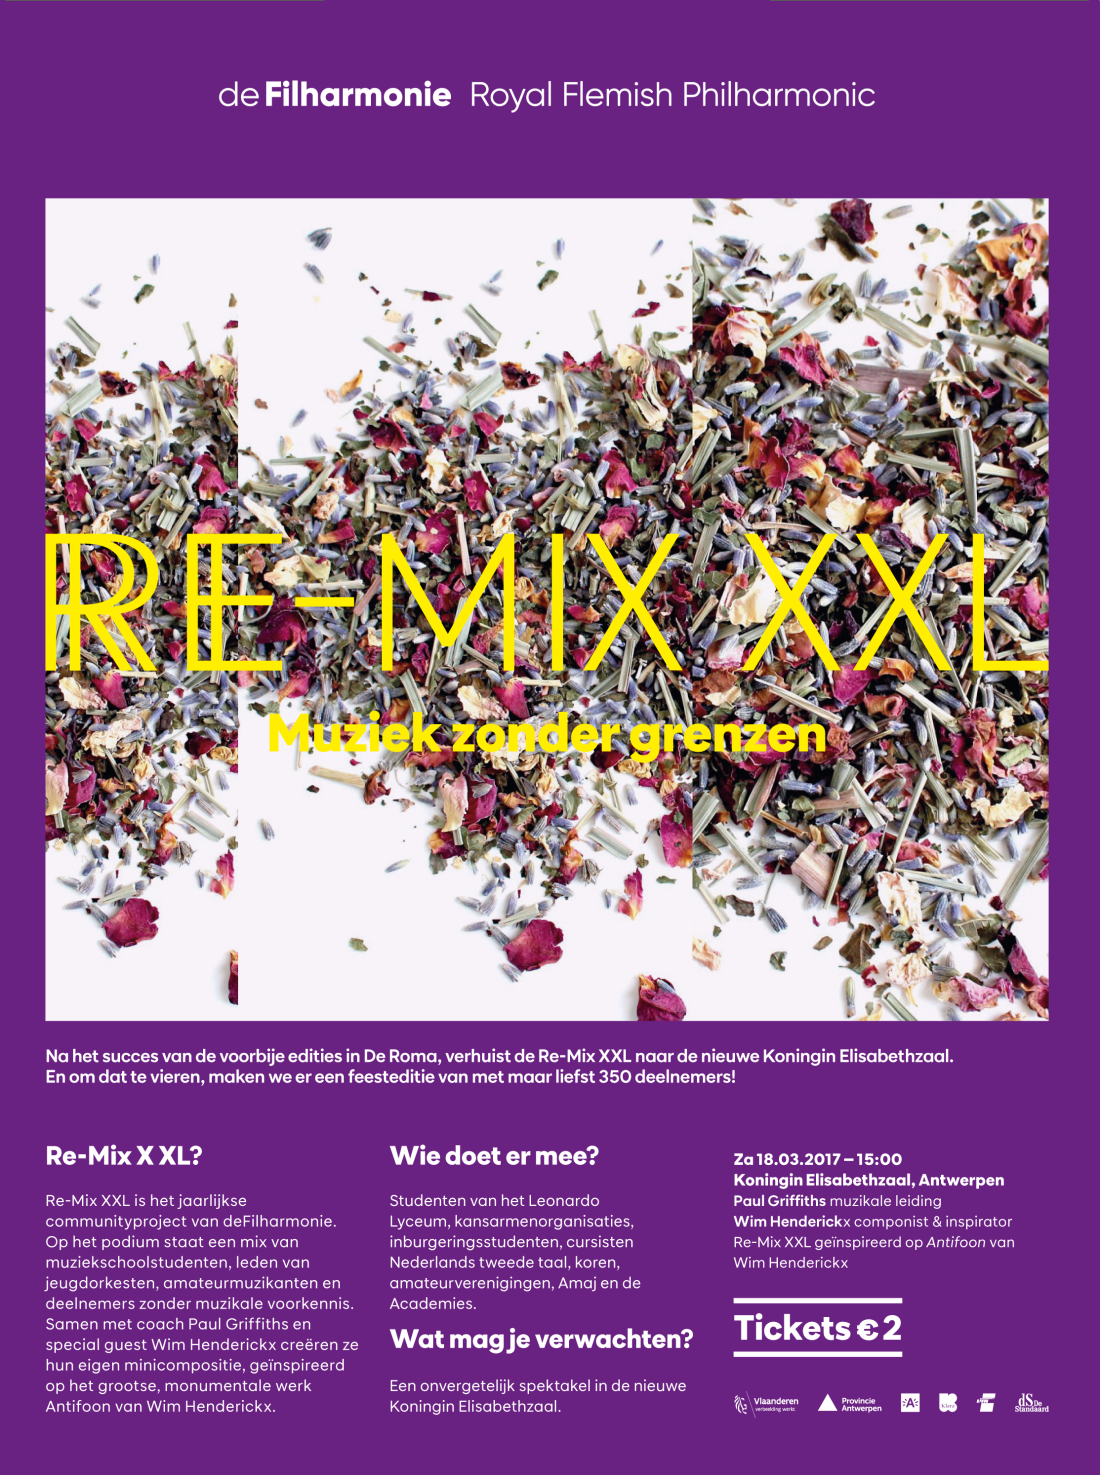 remix-xxl